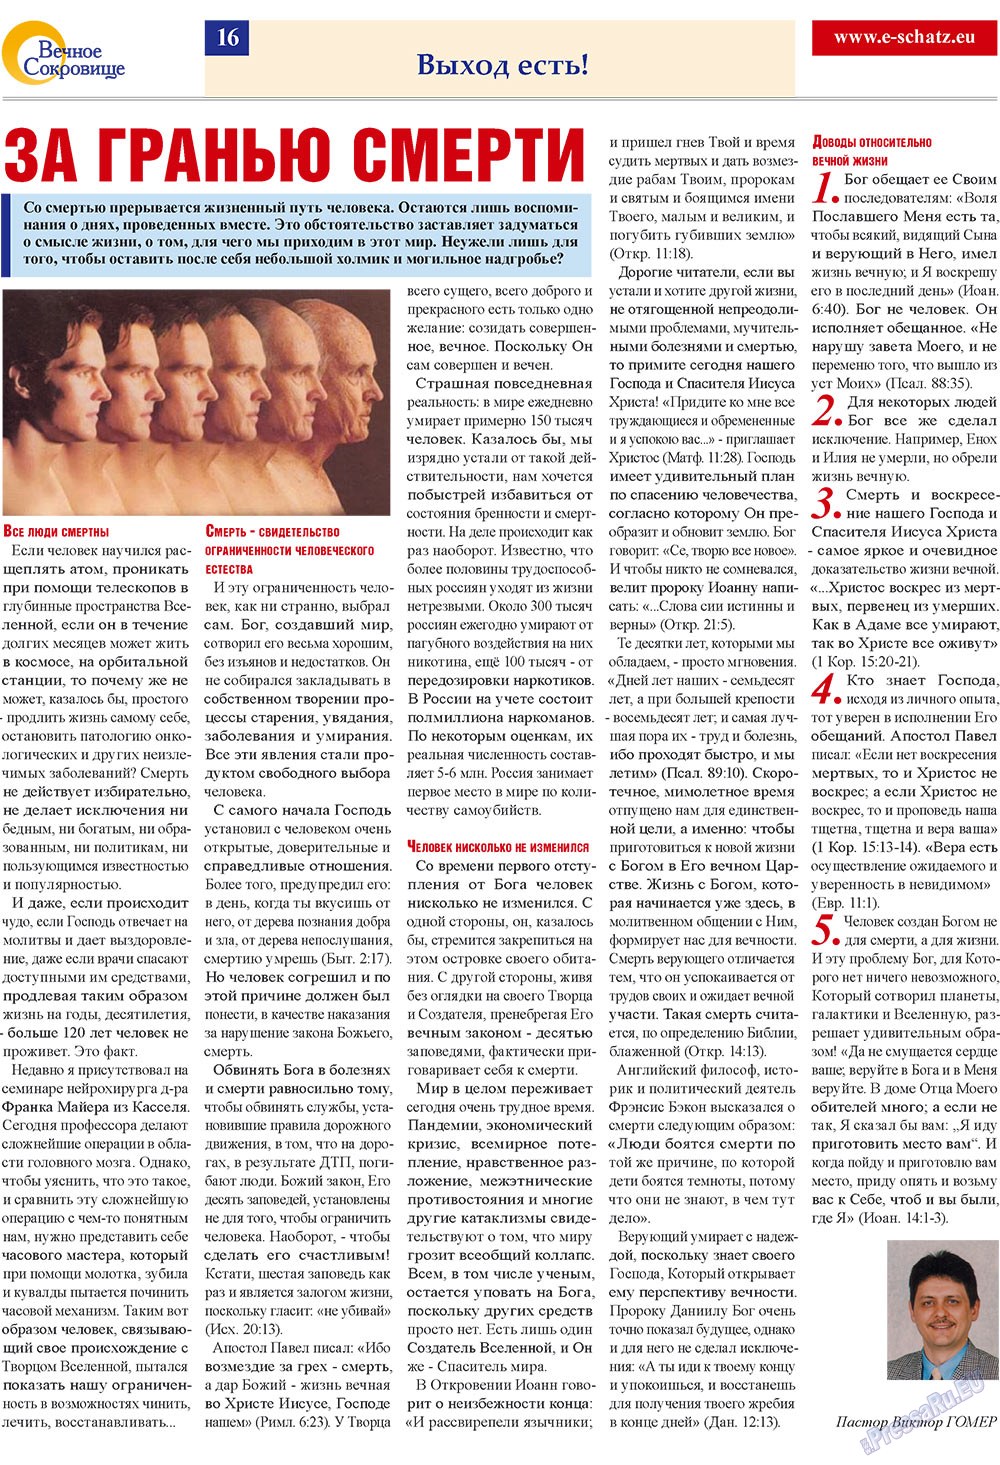 Вечное сокровище, газета. 2009 №4 стр.16